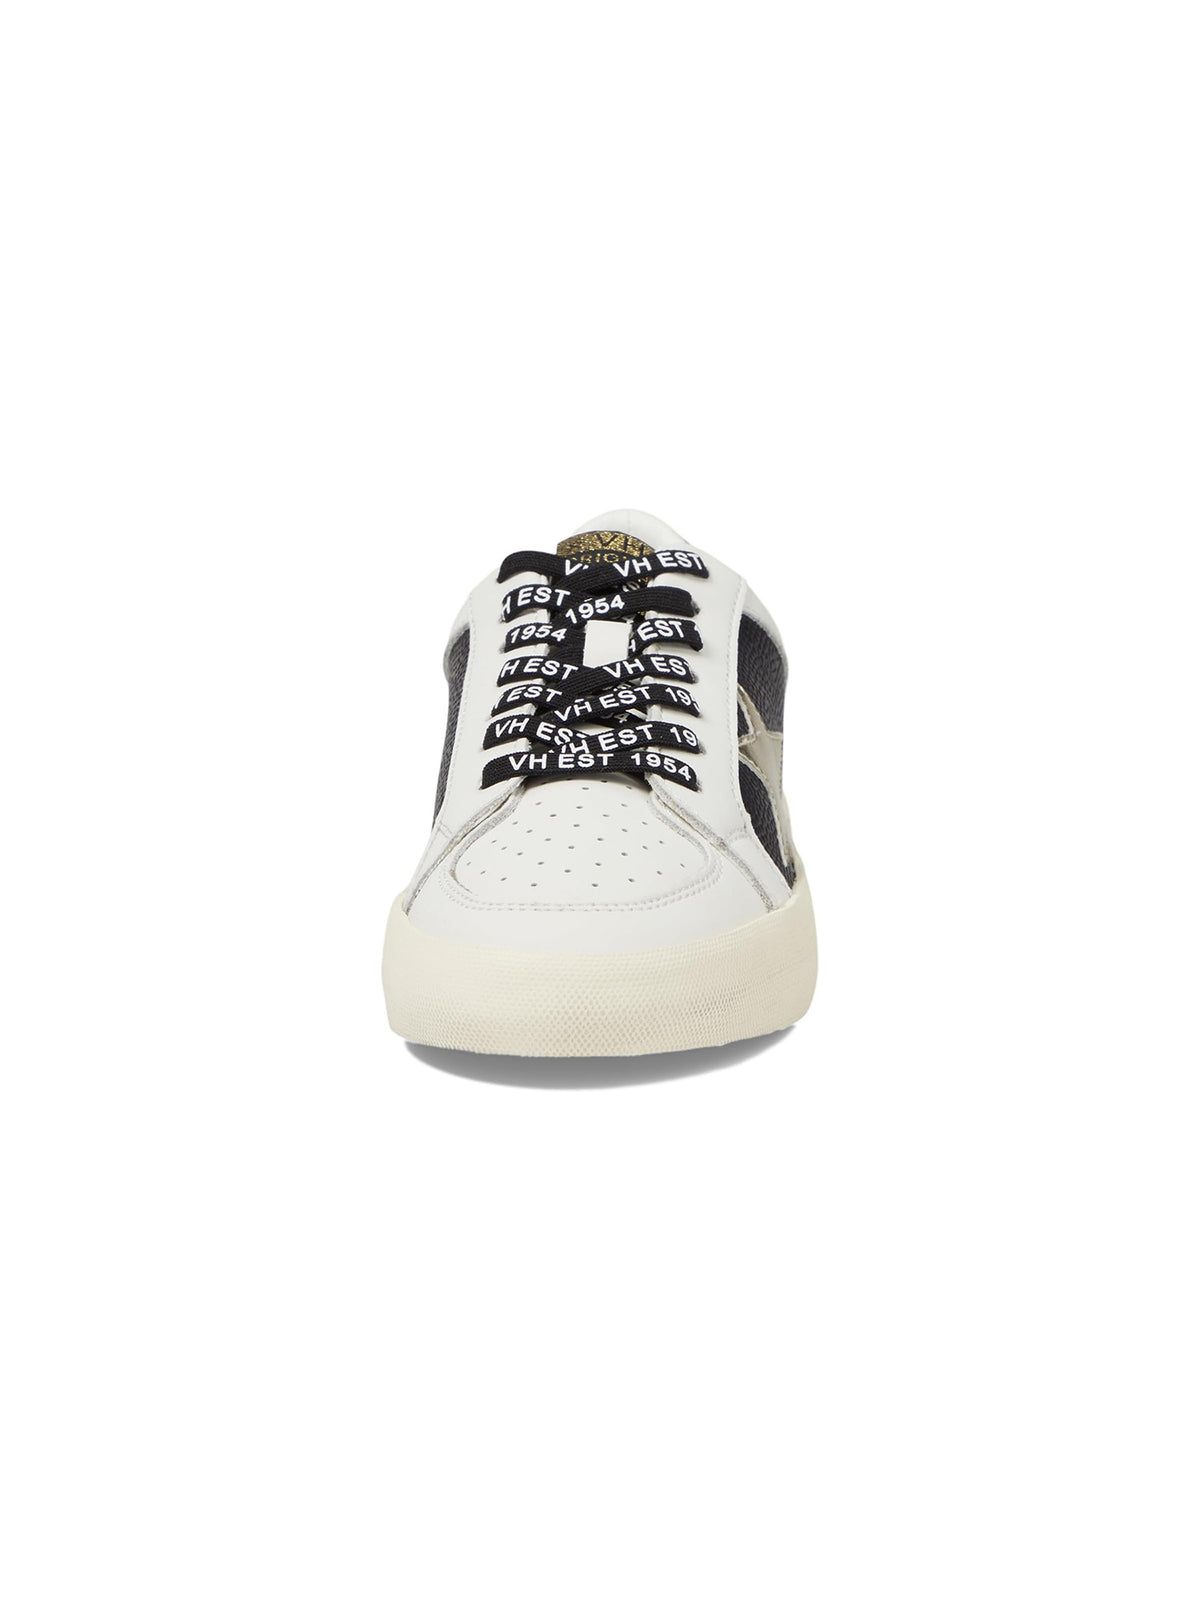 vintage havana reflex 19 sneakers in white black pebbled multi